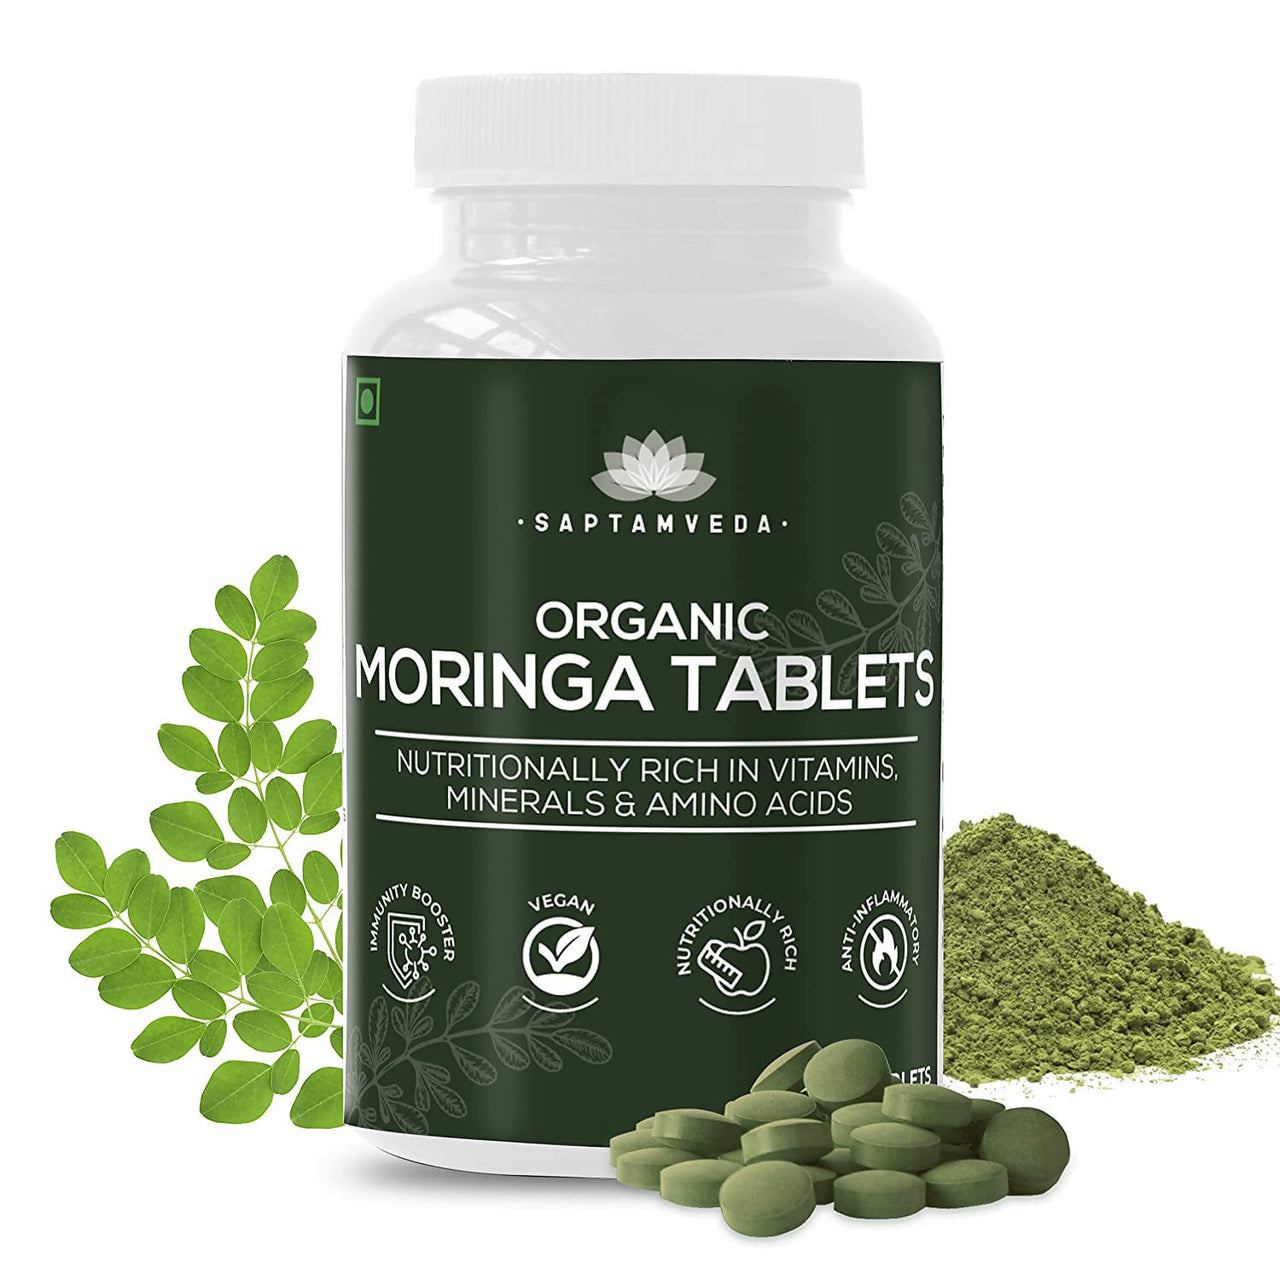 Saptamveda Organic Moringa Tablets